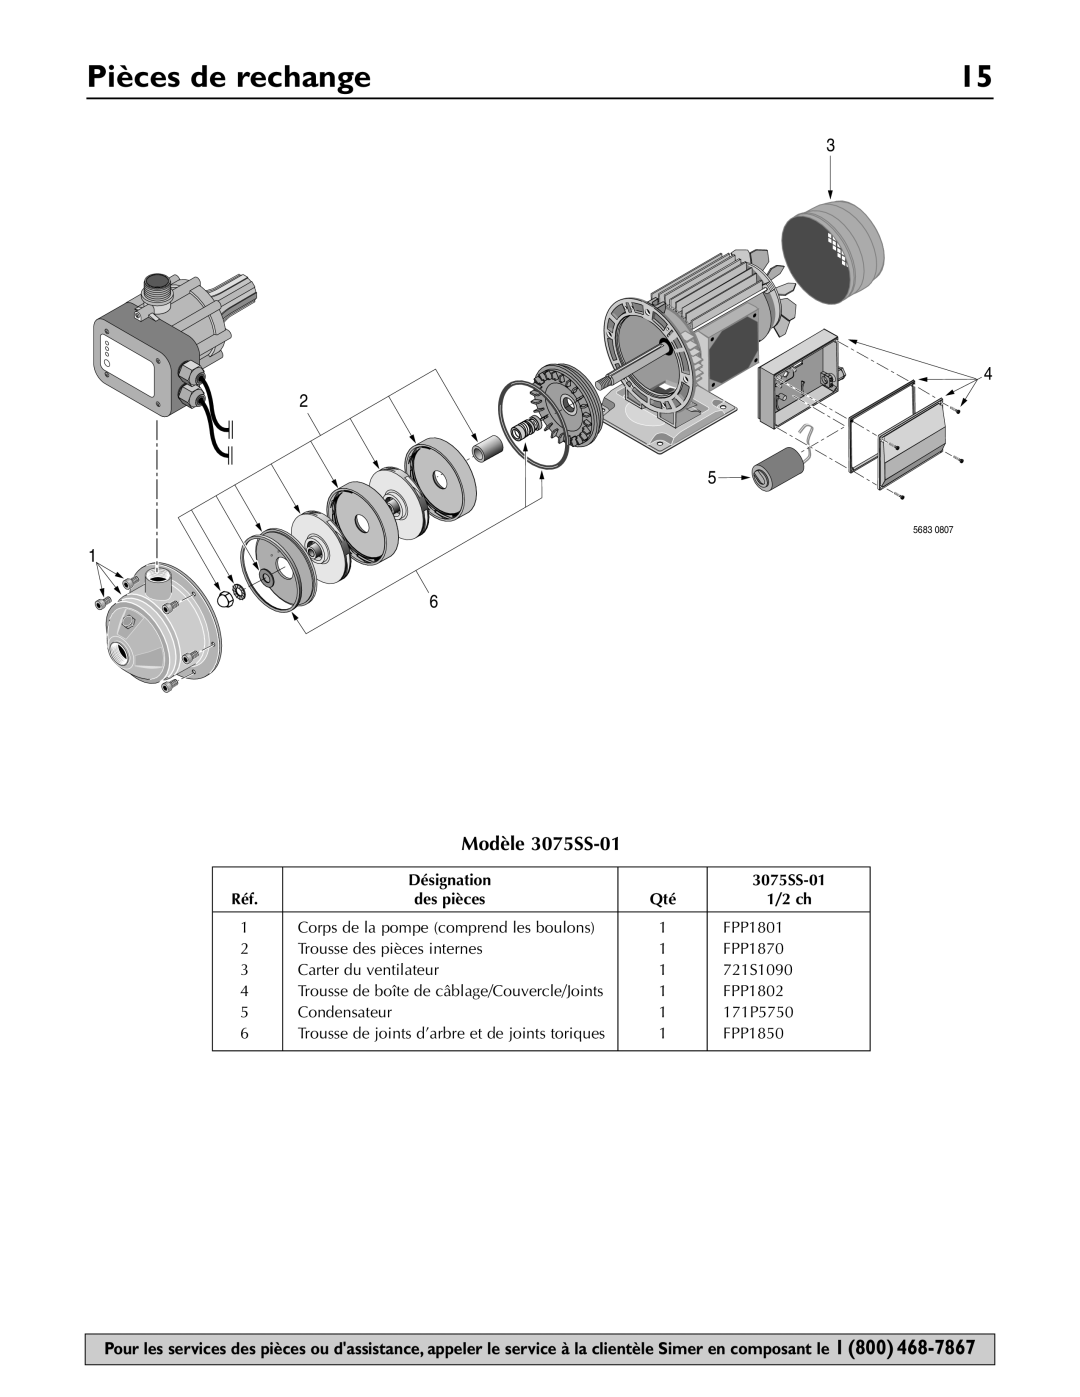 Simer Pumps owner manual Pièces de rechange, Modèle 3075SS-01 